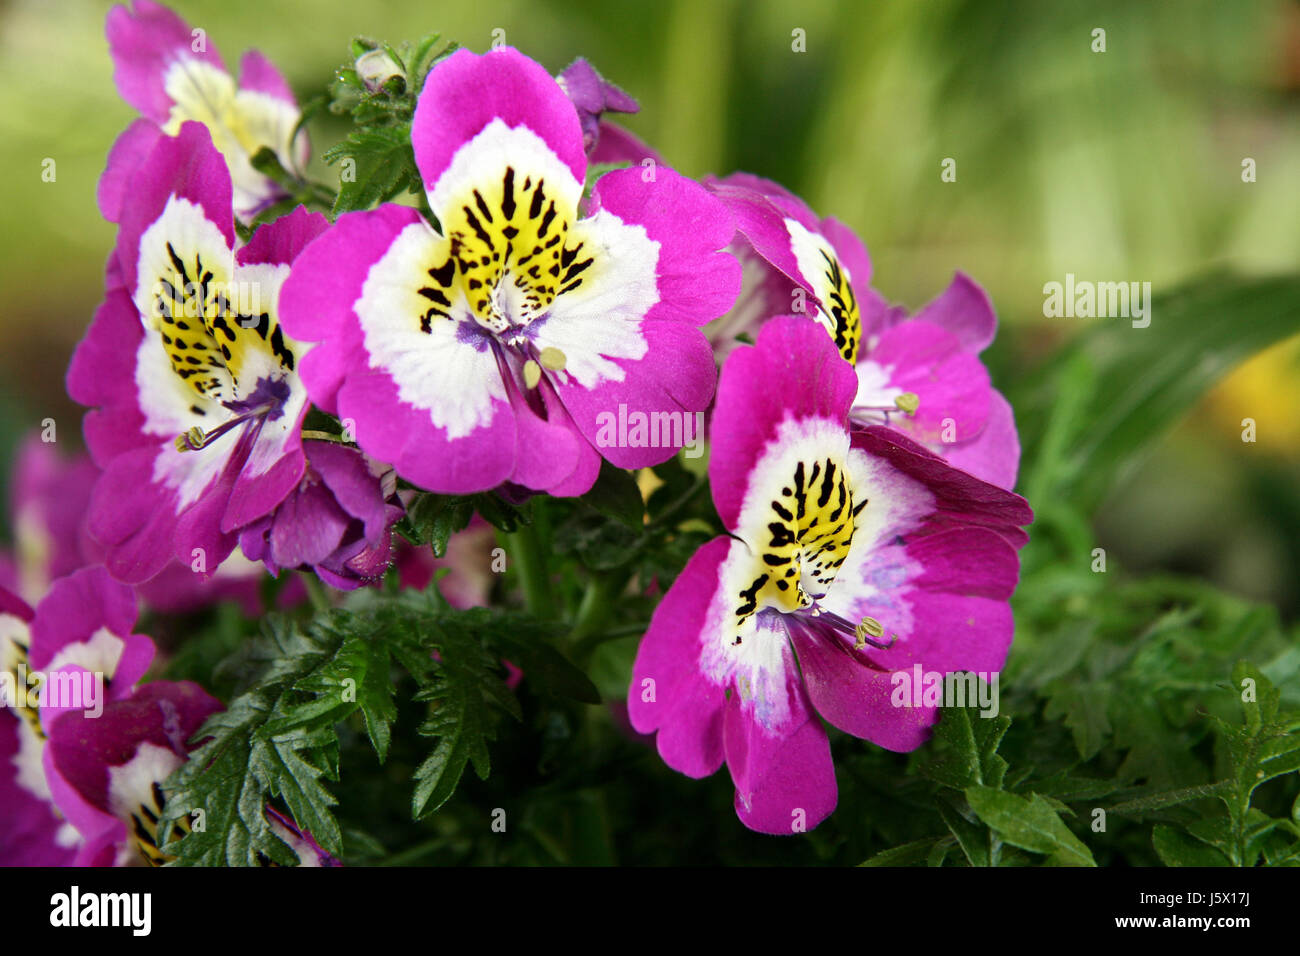 novelty shine shines bright lucent light serene luminous garden flower plant Stock Photo